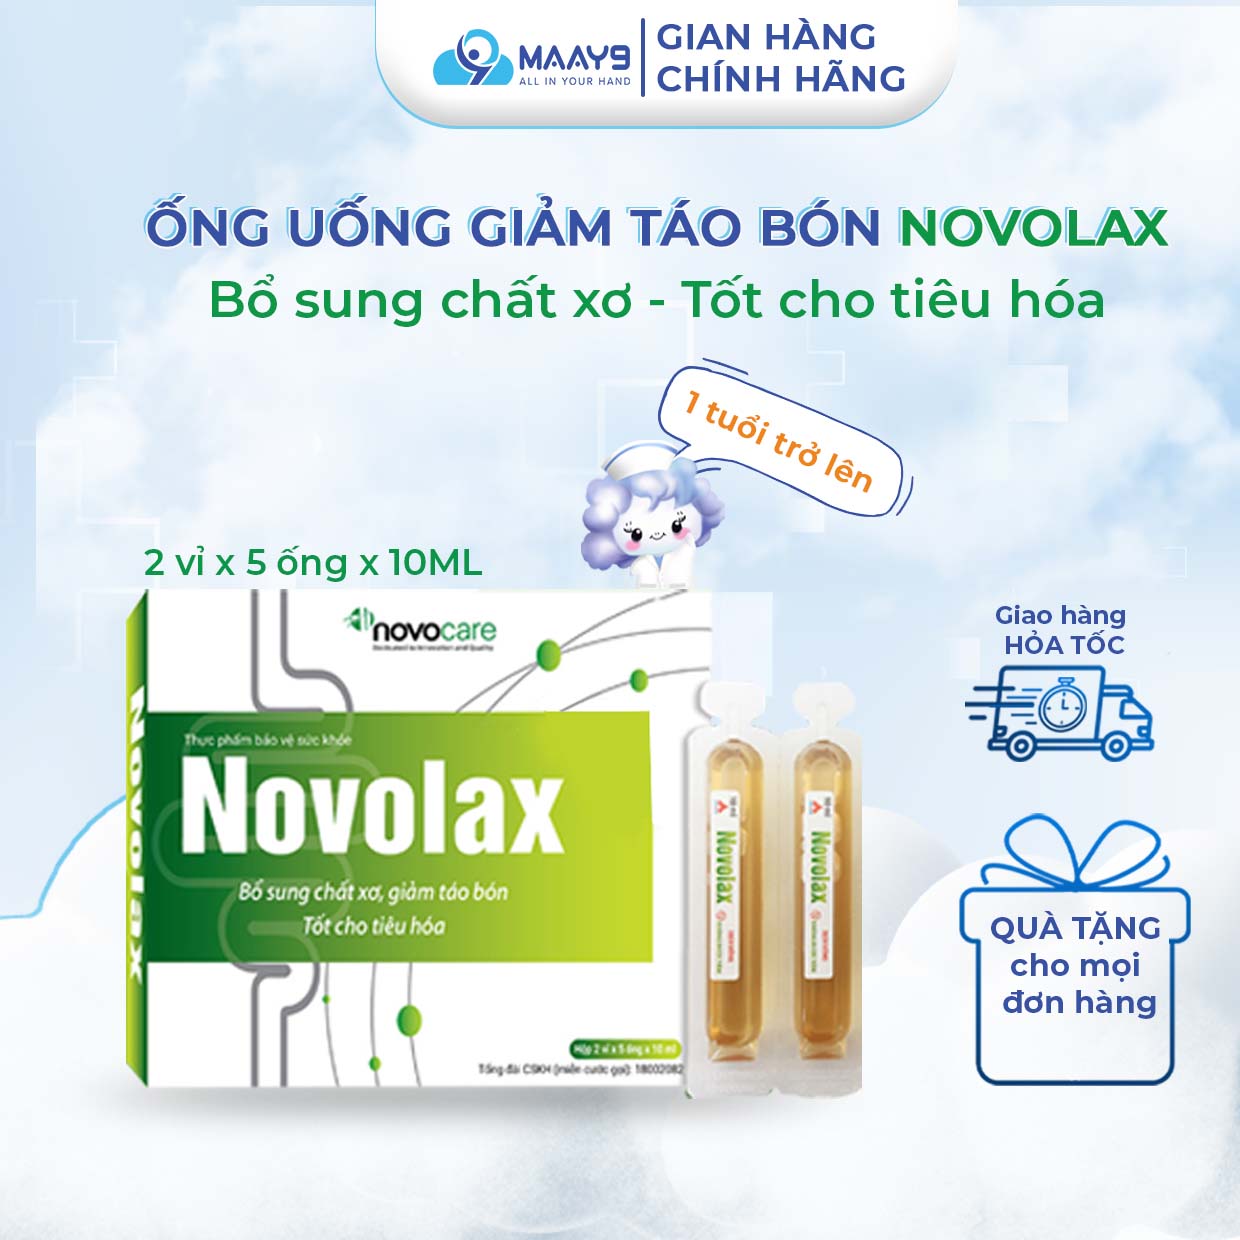 Ống uống giảm táo bón Novocare Novolax bổ sung chất xơ, hỗ trợ nhuận tràng